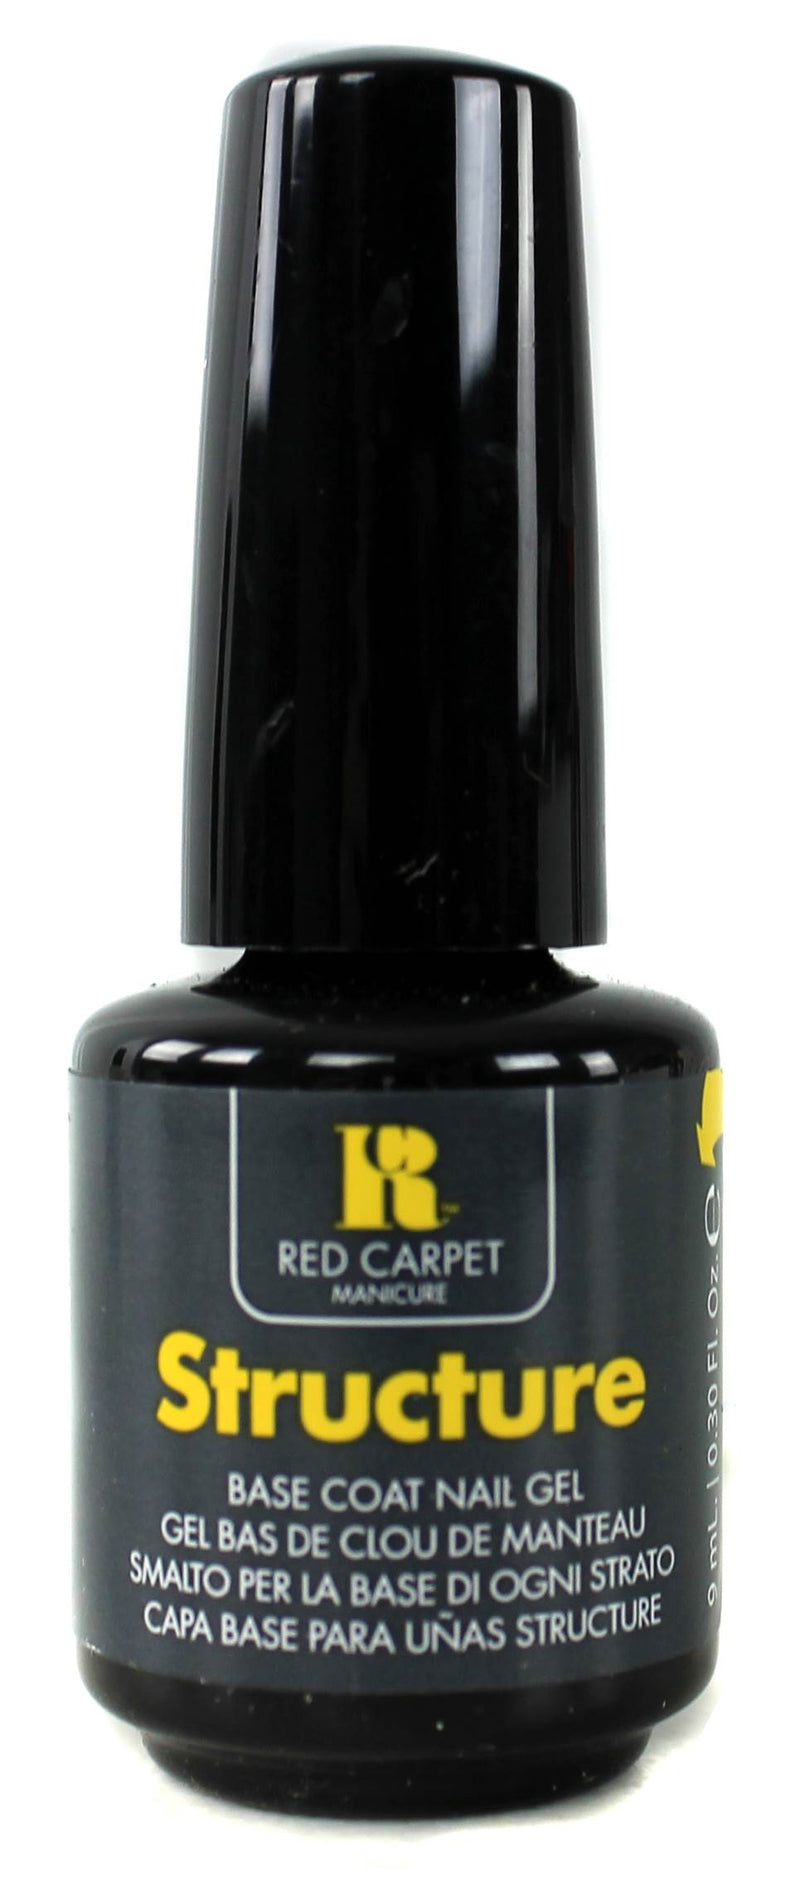 Red Carpet Manicure LED Package Soak Off Gel Nail Polish Starter Kit (2 Pack)